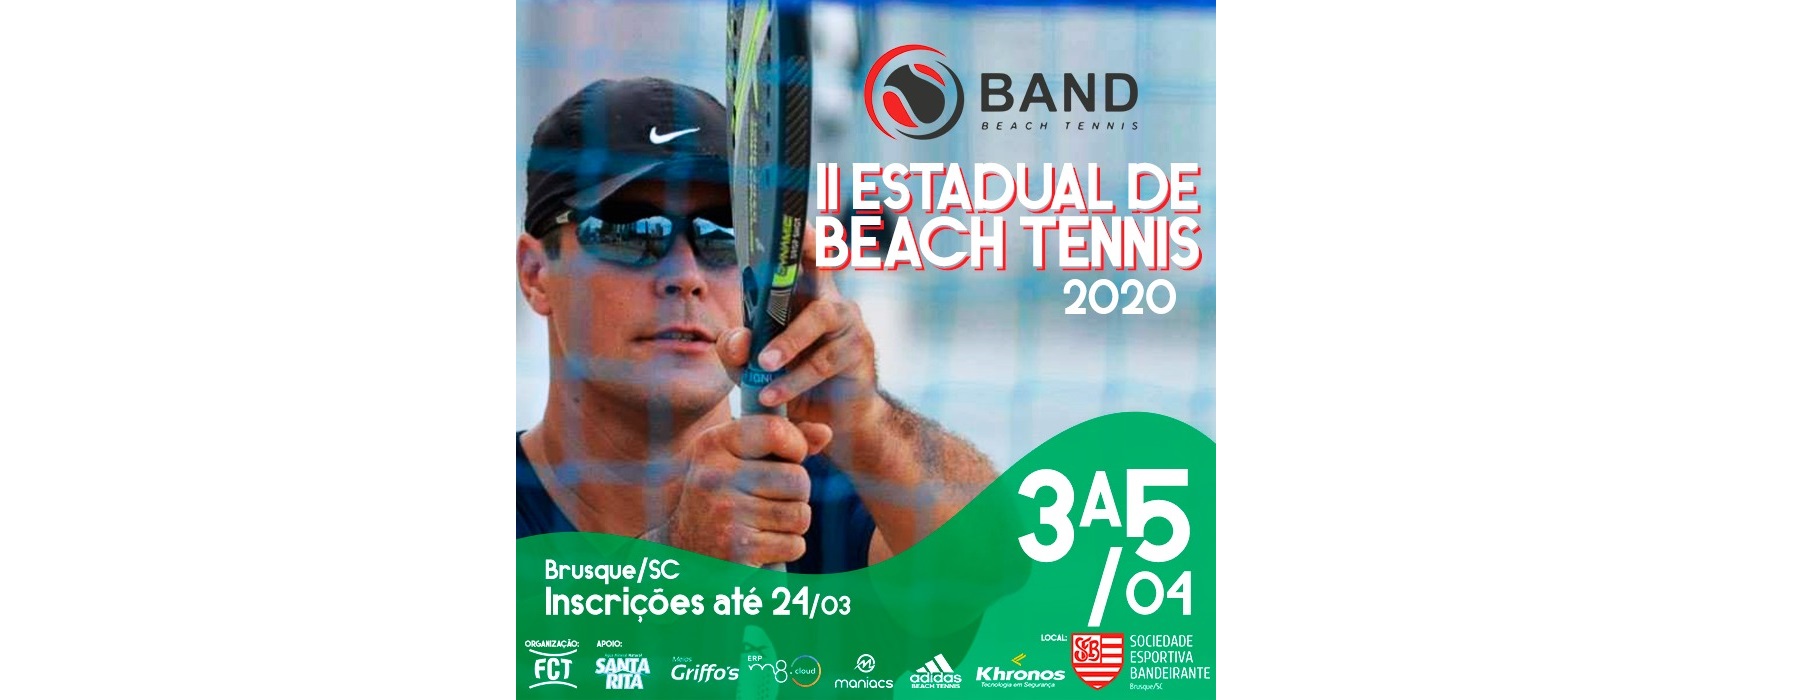 Estão abertas as inscrições para o II Estadual de Beach Tennis 2020!